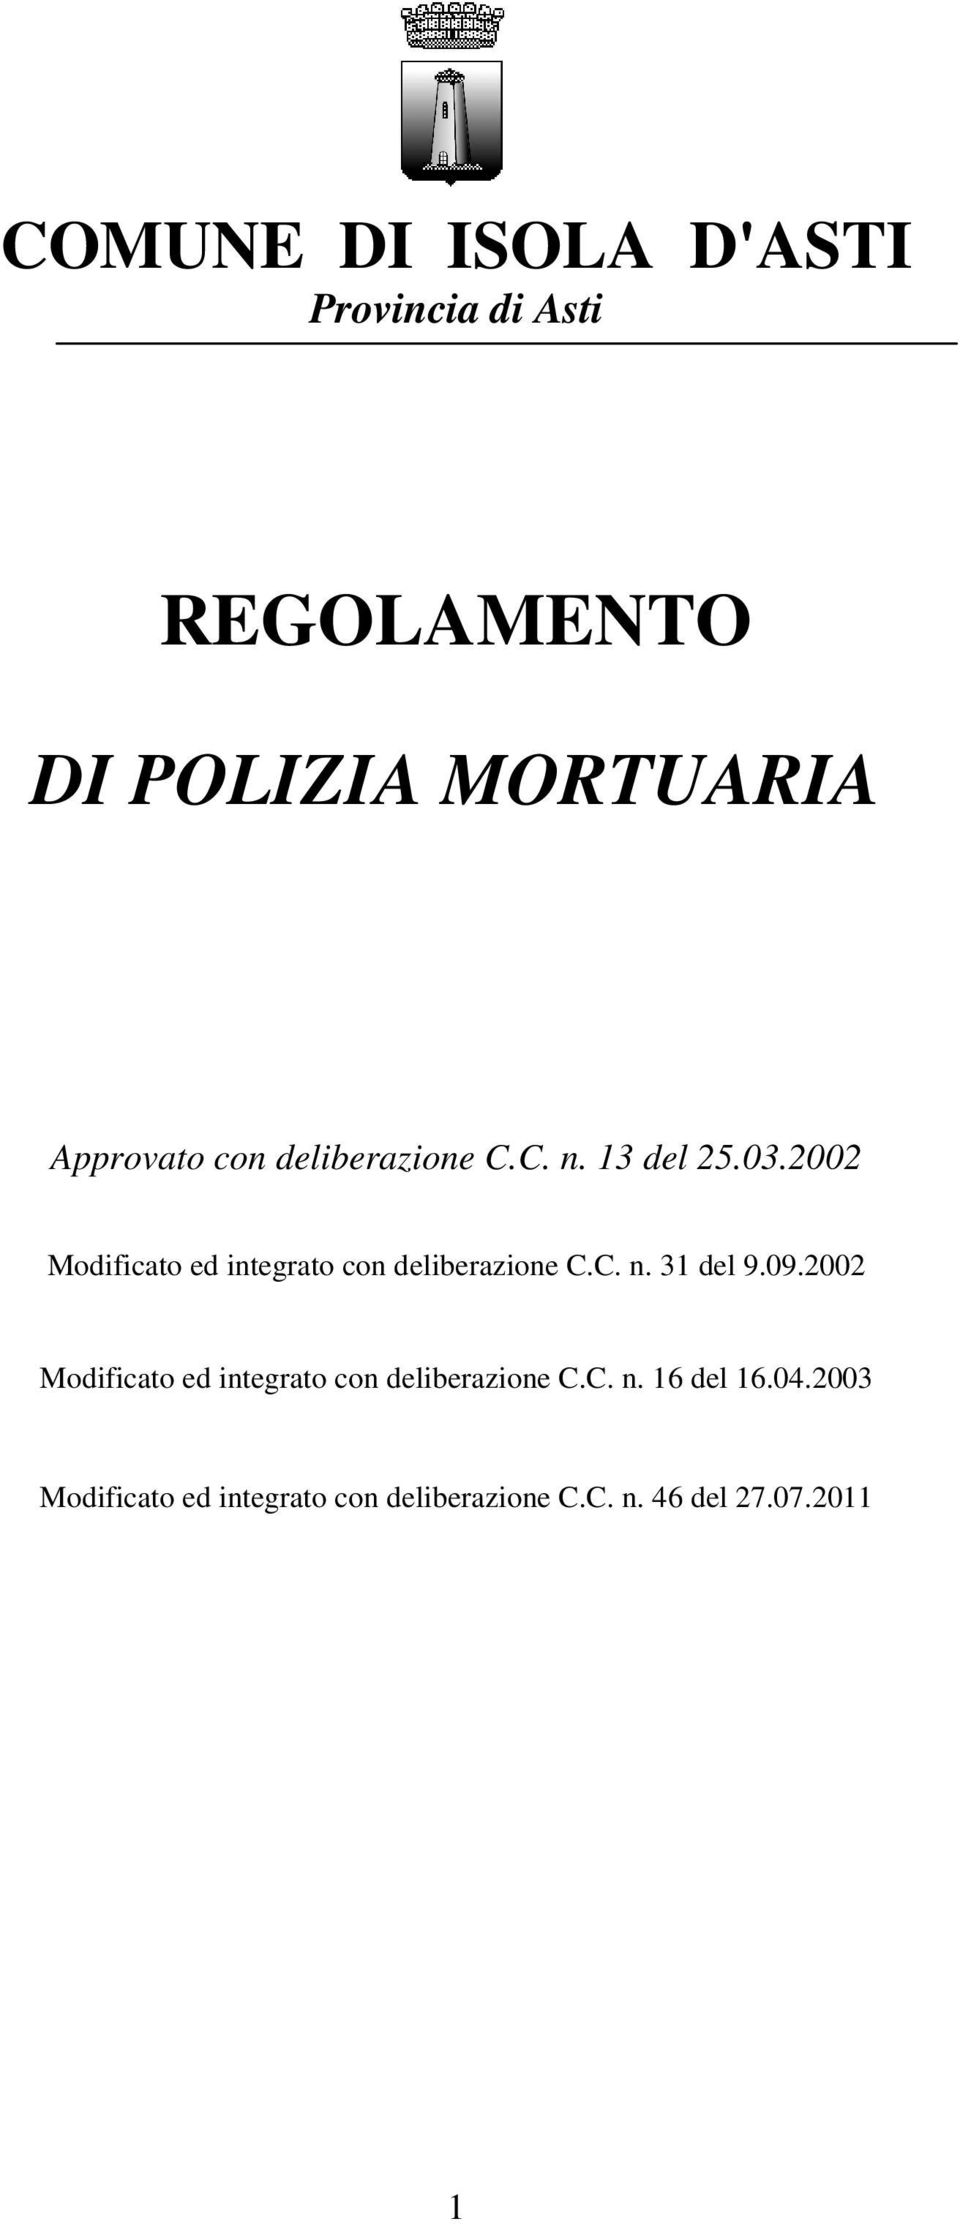 2002 Modificato ed integrato con deliberazione C.C. n. 31 del 9.09.